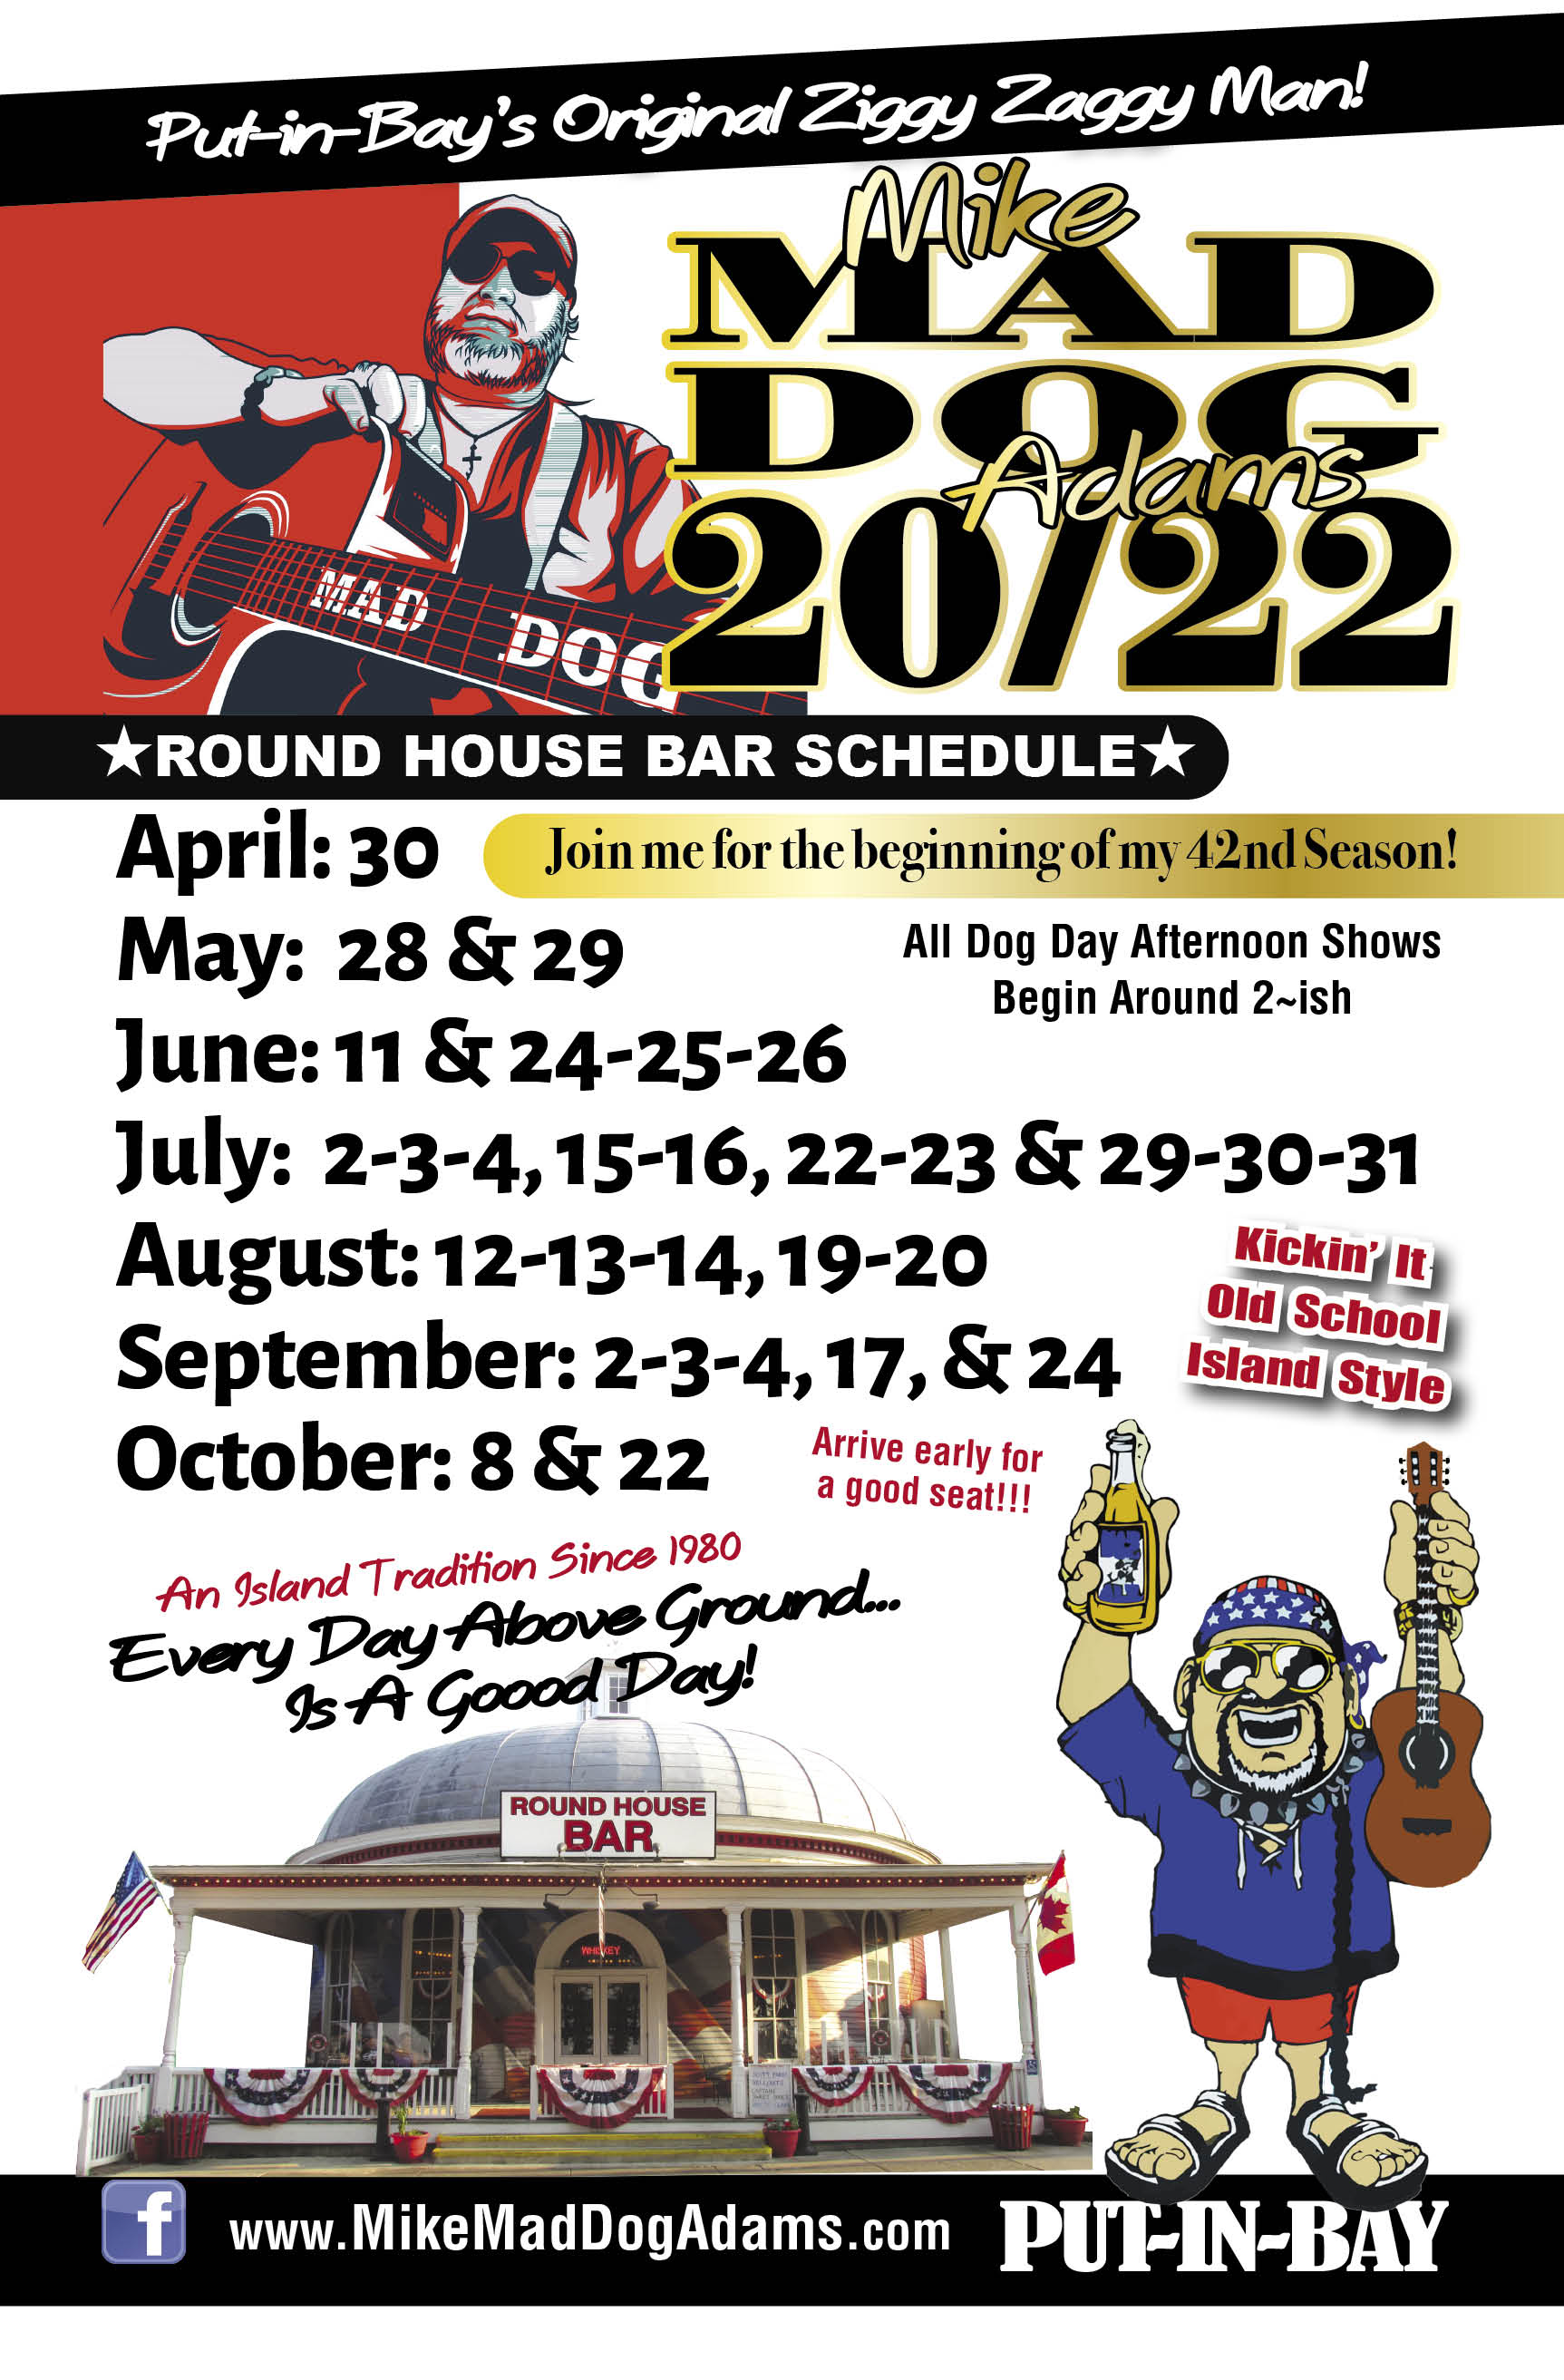 Round House Bar Schedule